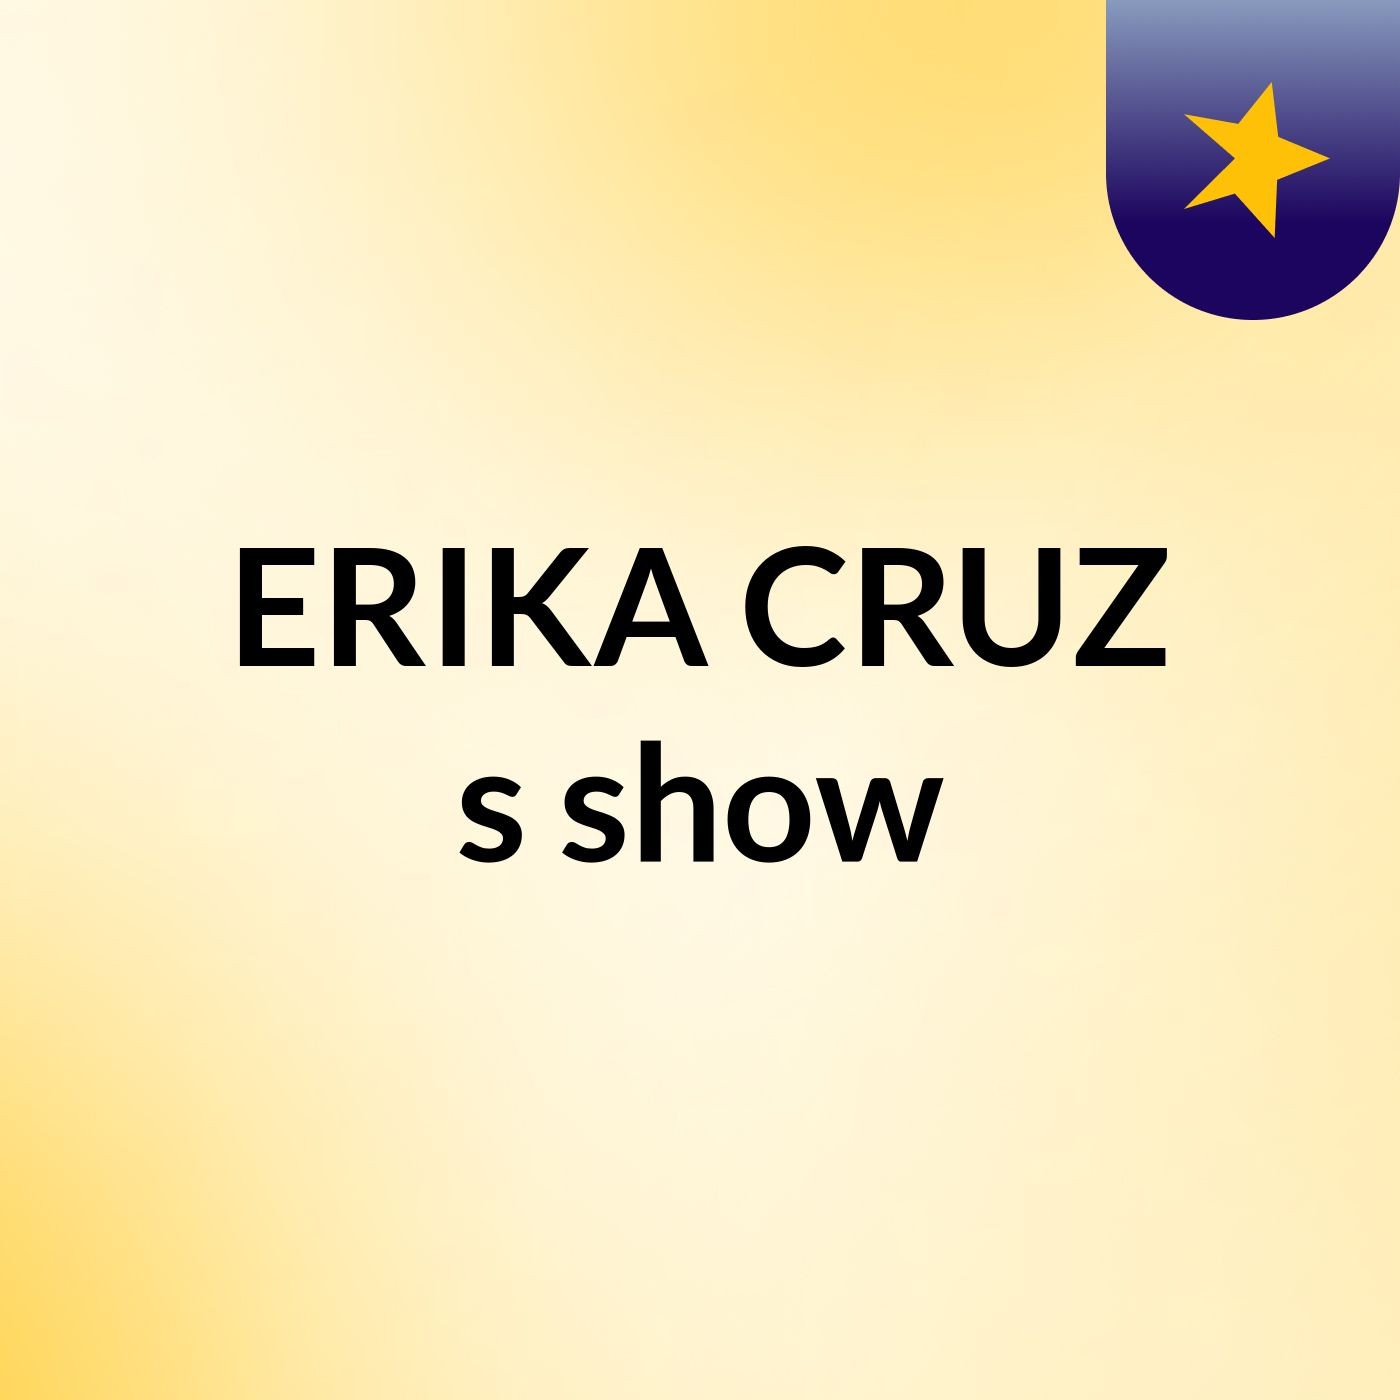 ERIKA CRUZ's show